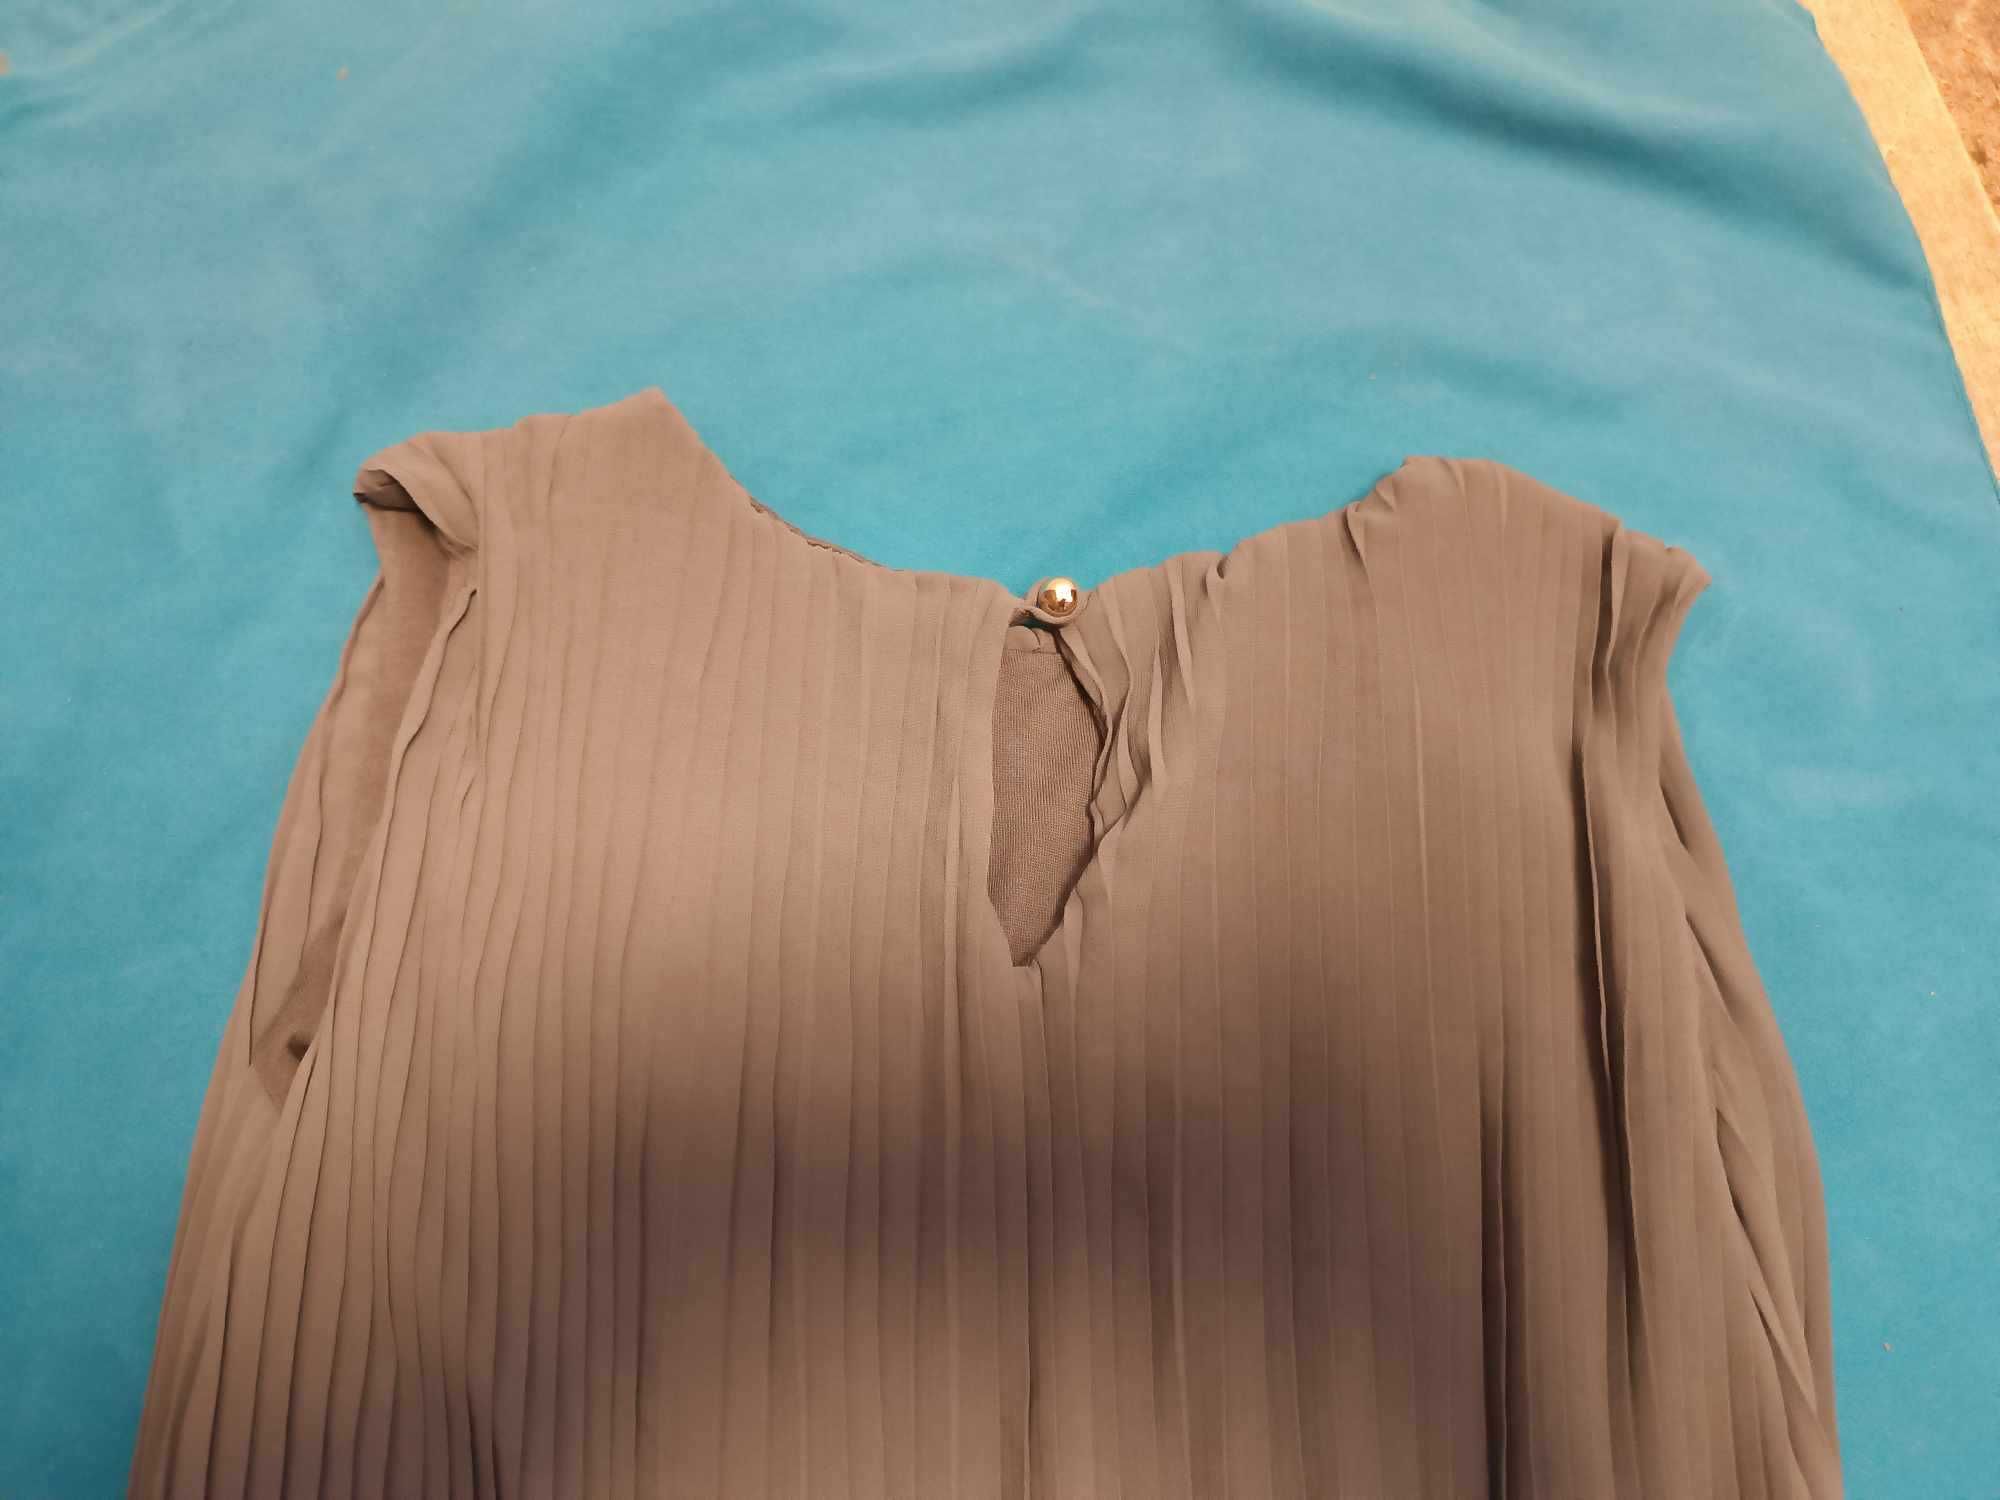 Sukienka szara plisowana z paskiem na cienkiej podszewce - M - XL.